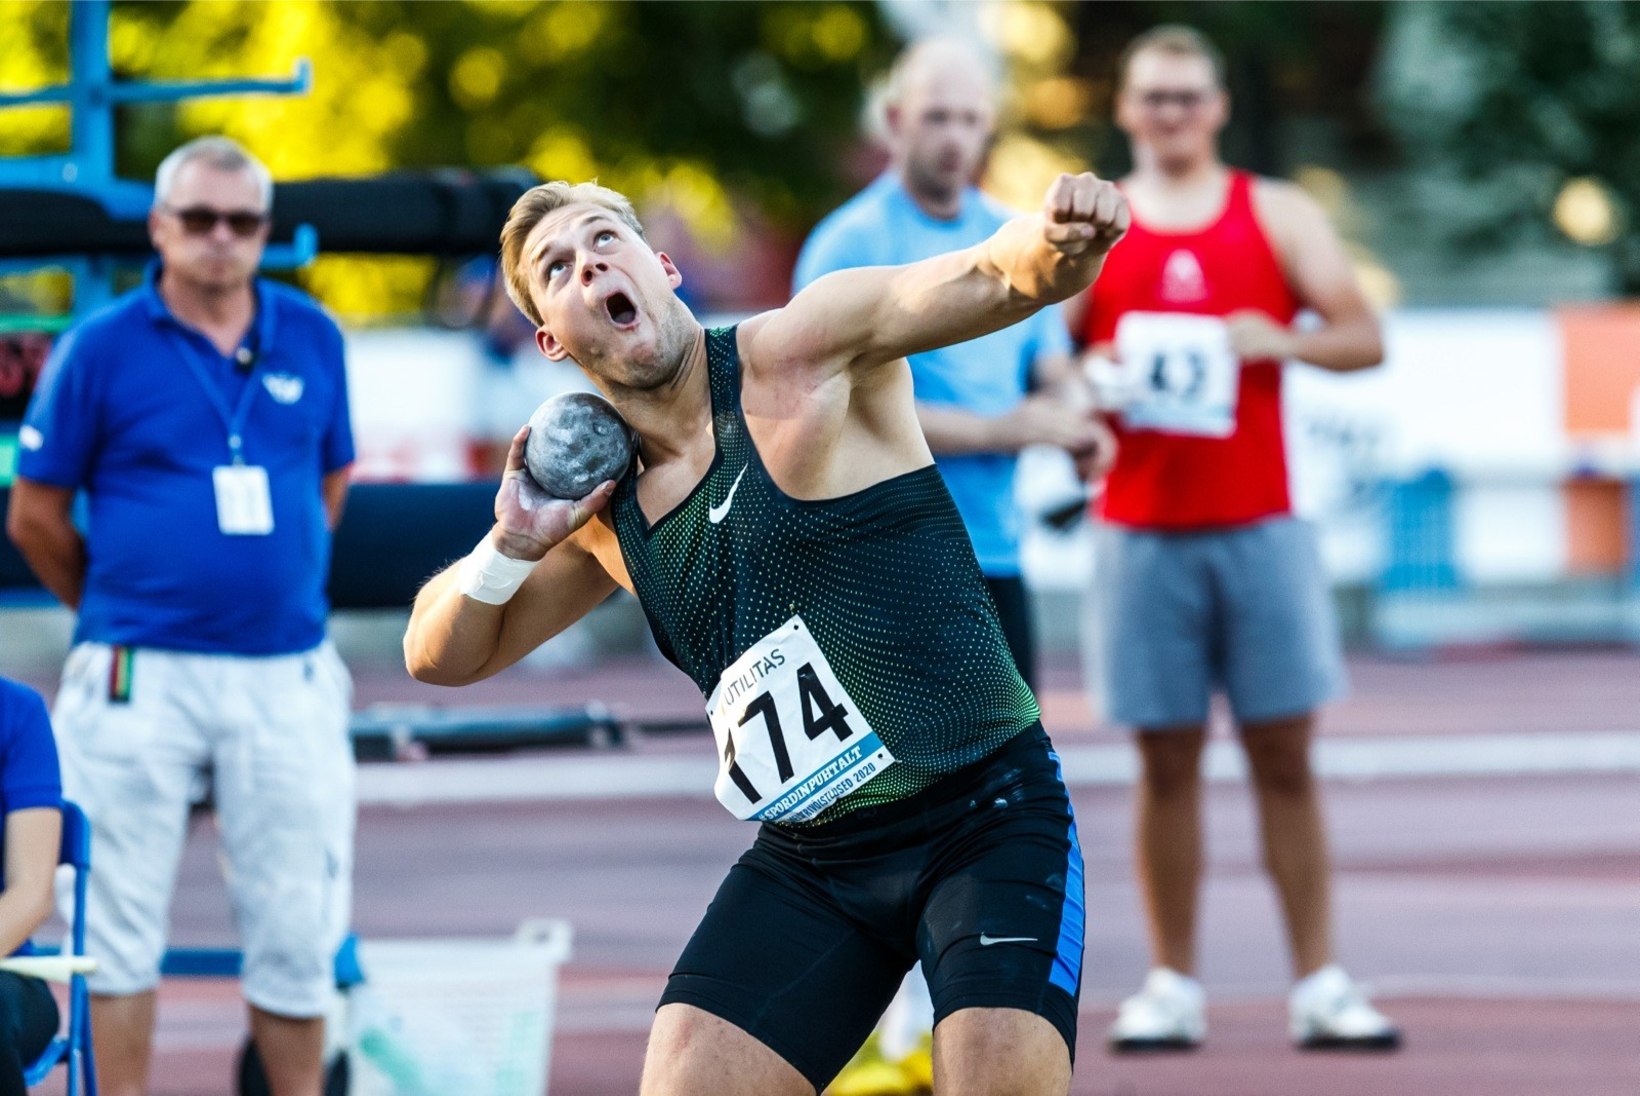 GALERII | Eesti kergejõustiku meistrivõistlustel tehti ilusaid tulemusi